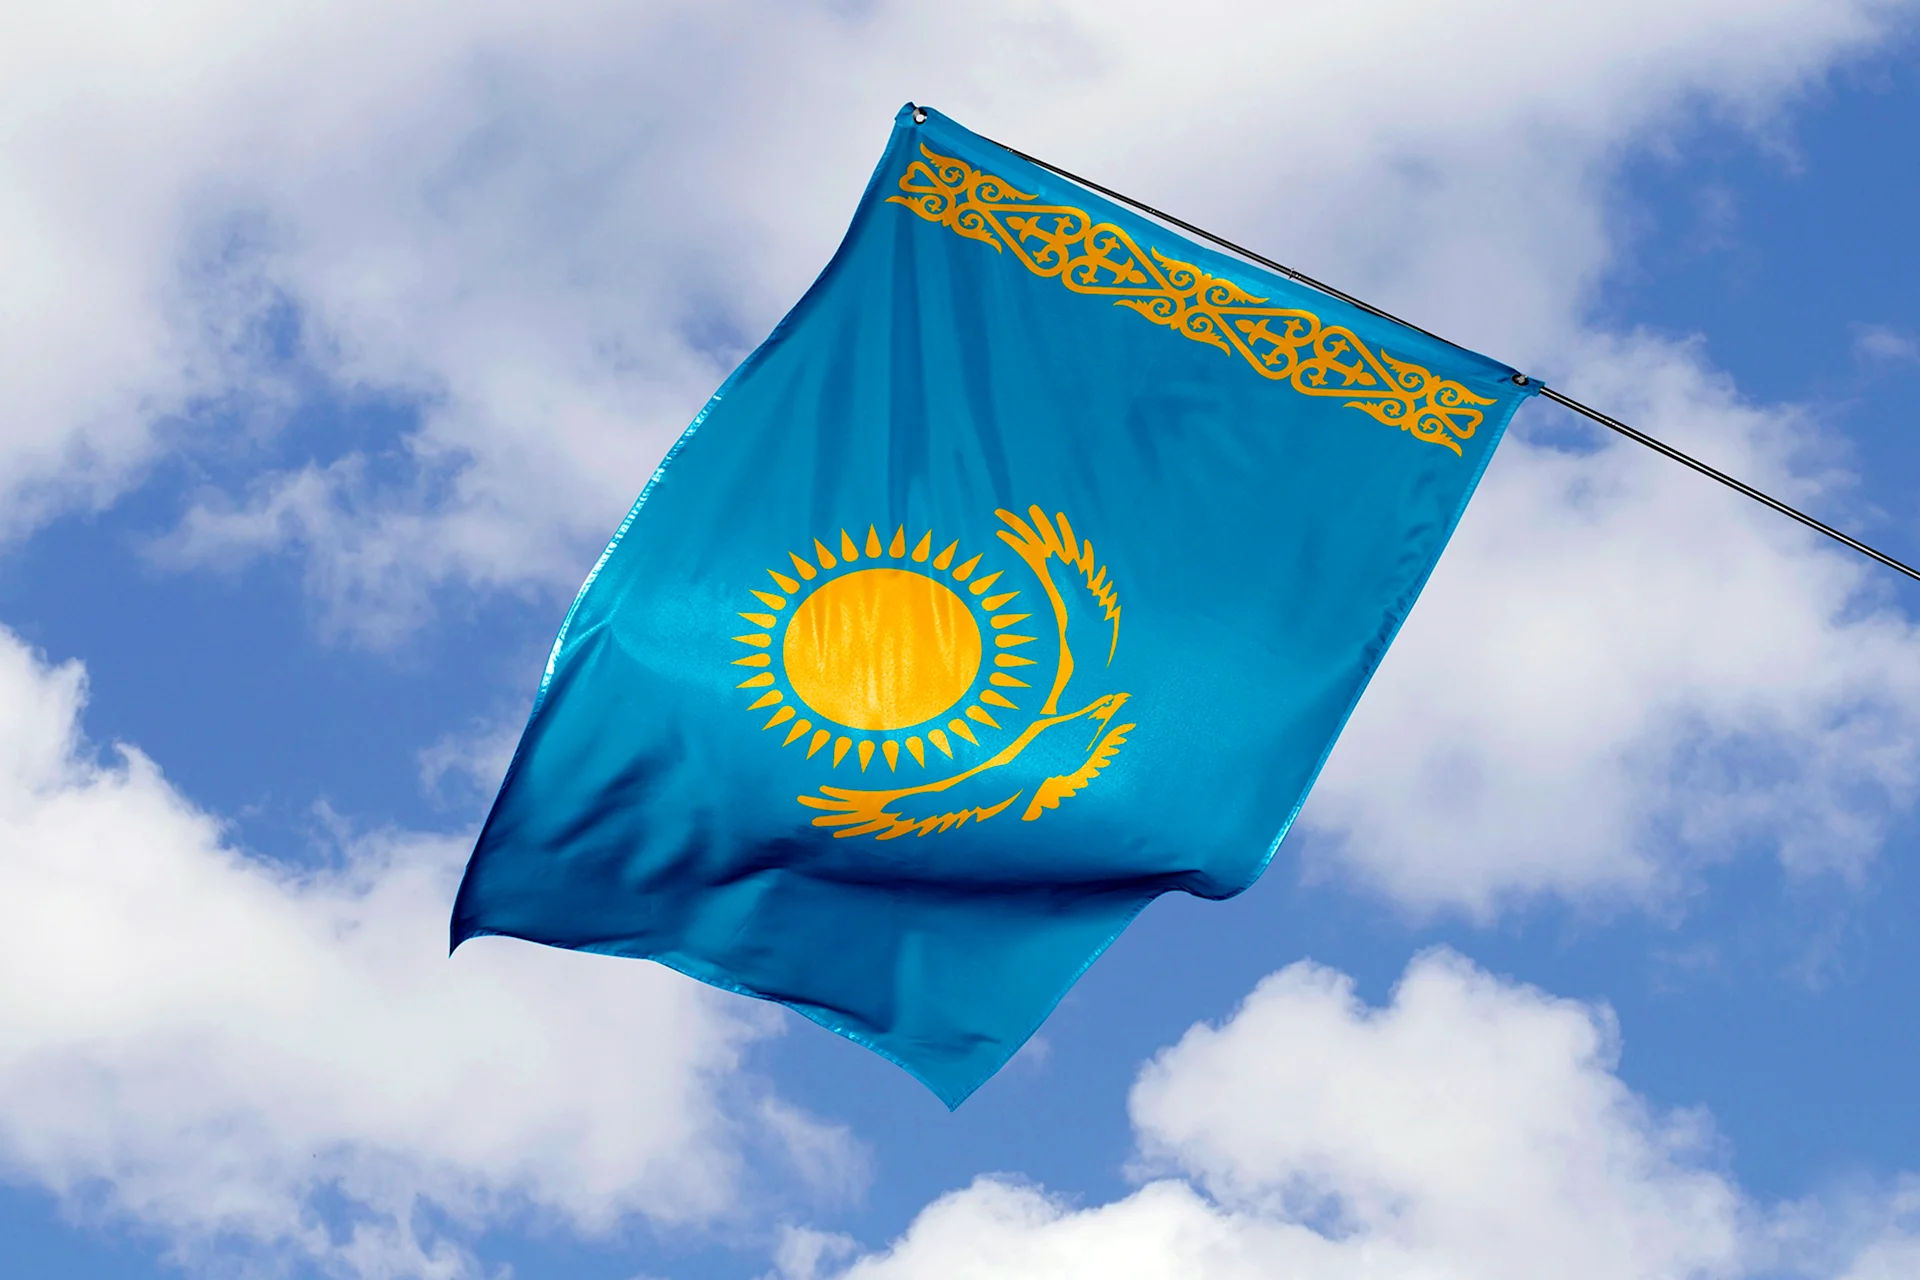 Конституция Казахстан фото 1920 1080